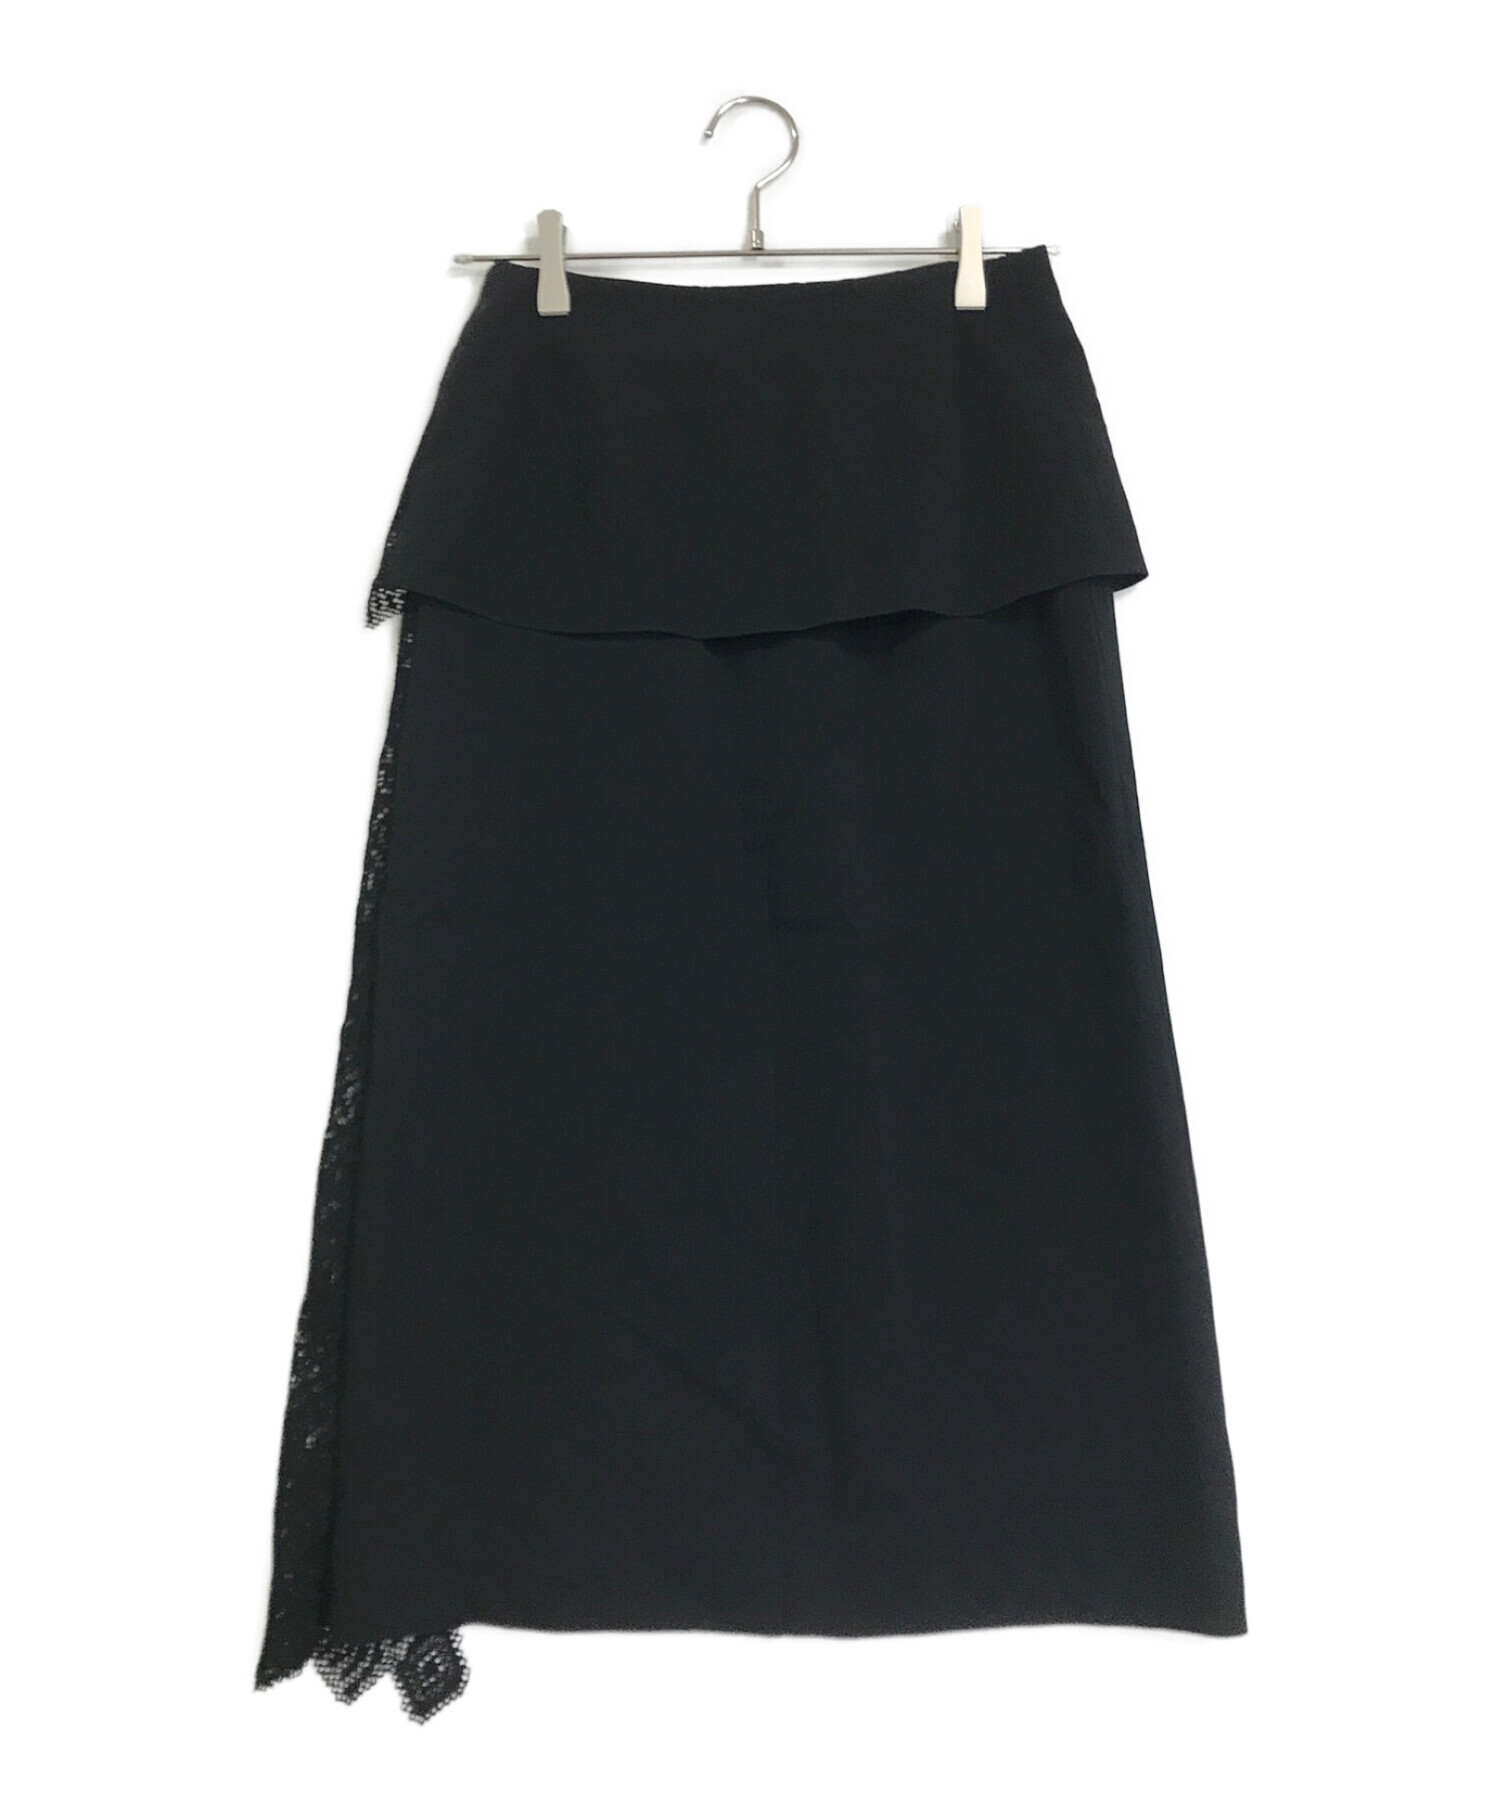 LE CIEL BLEU (ルシェルブルー) Lace Paneled Skirt ブラック サイズ:36